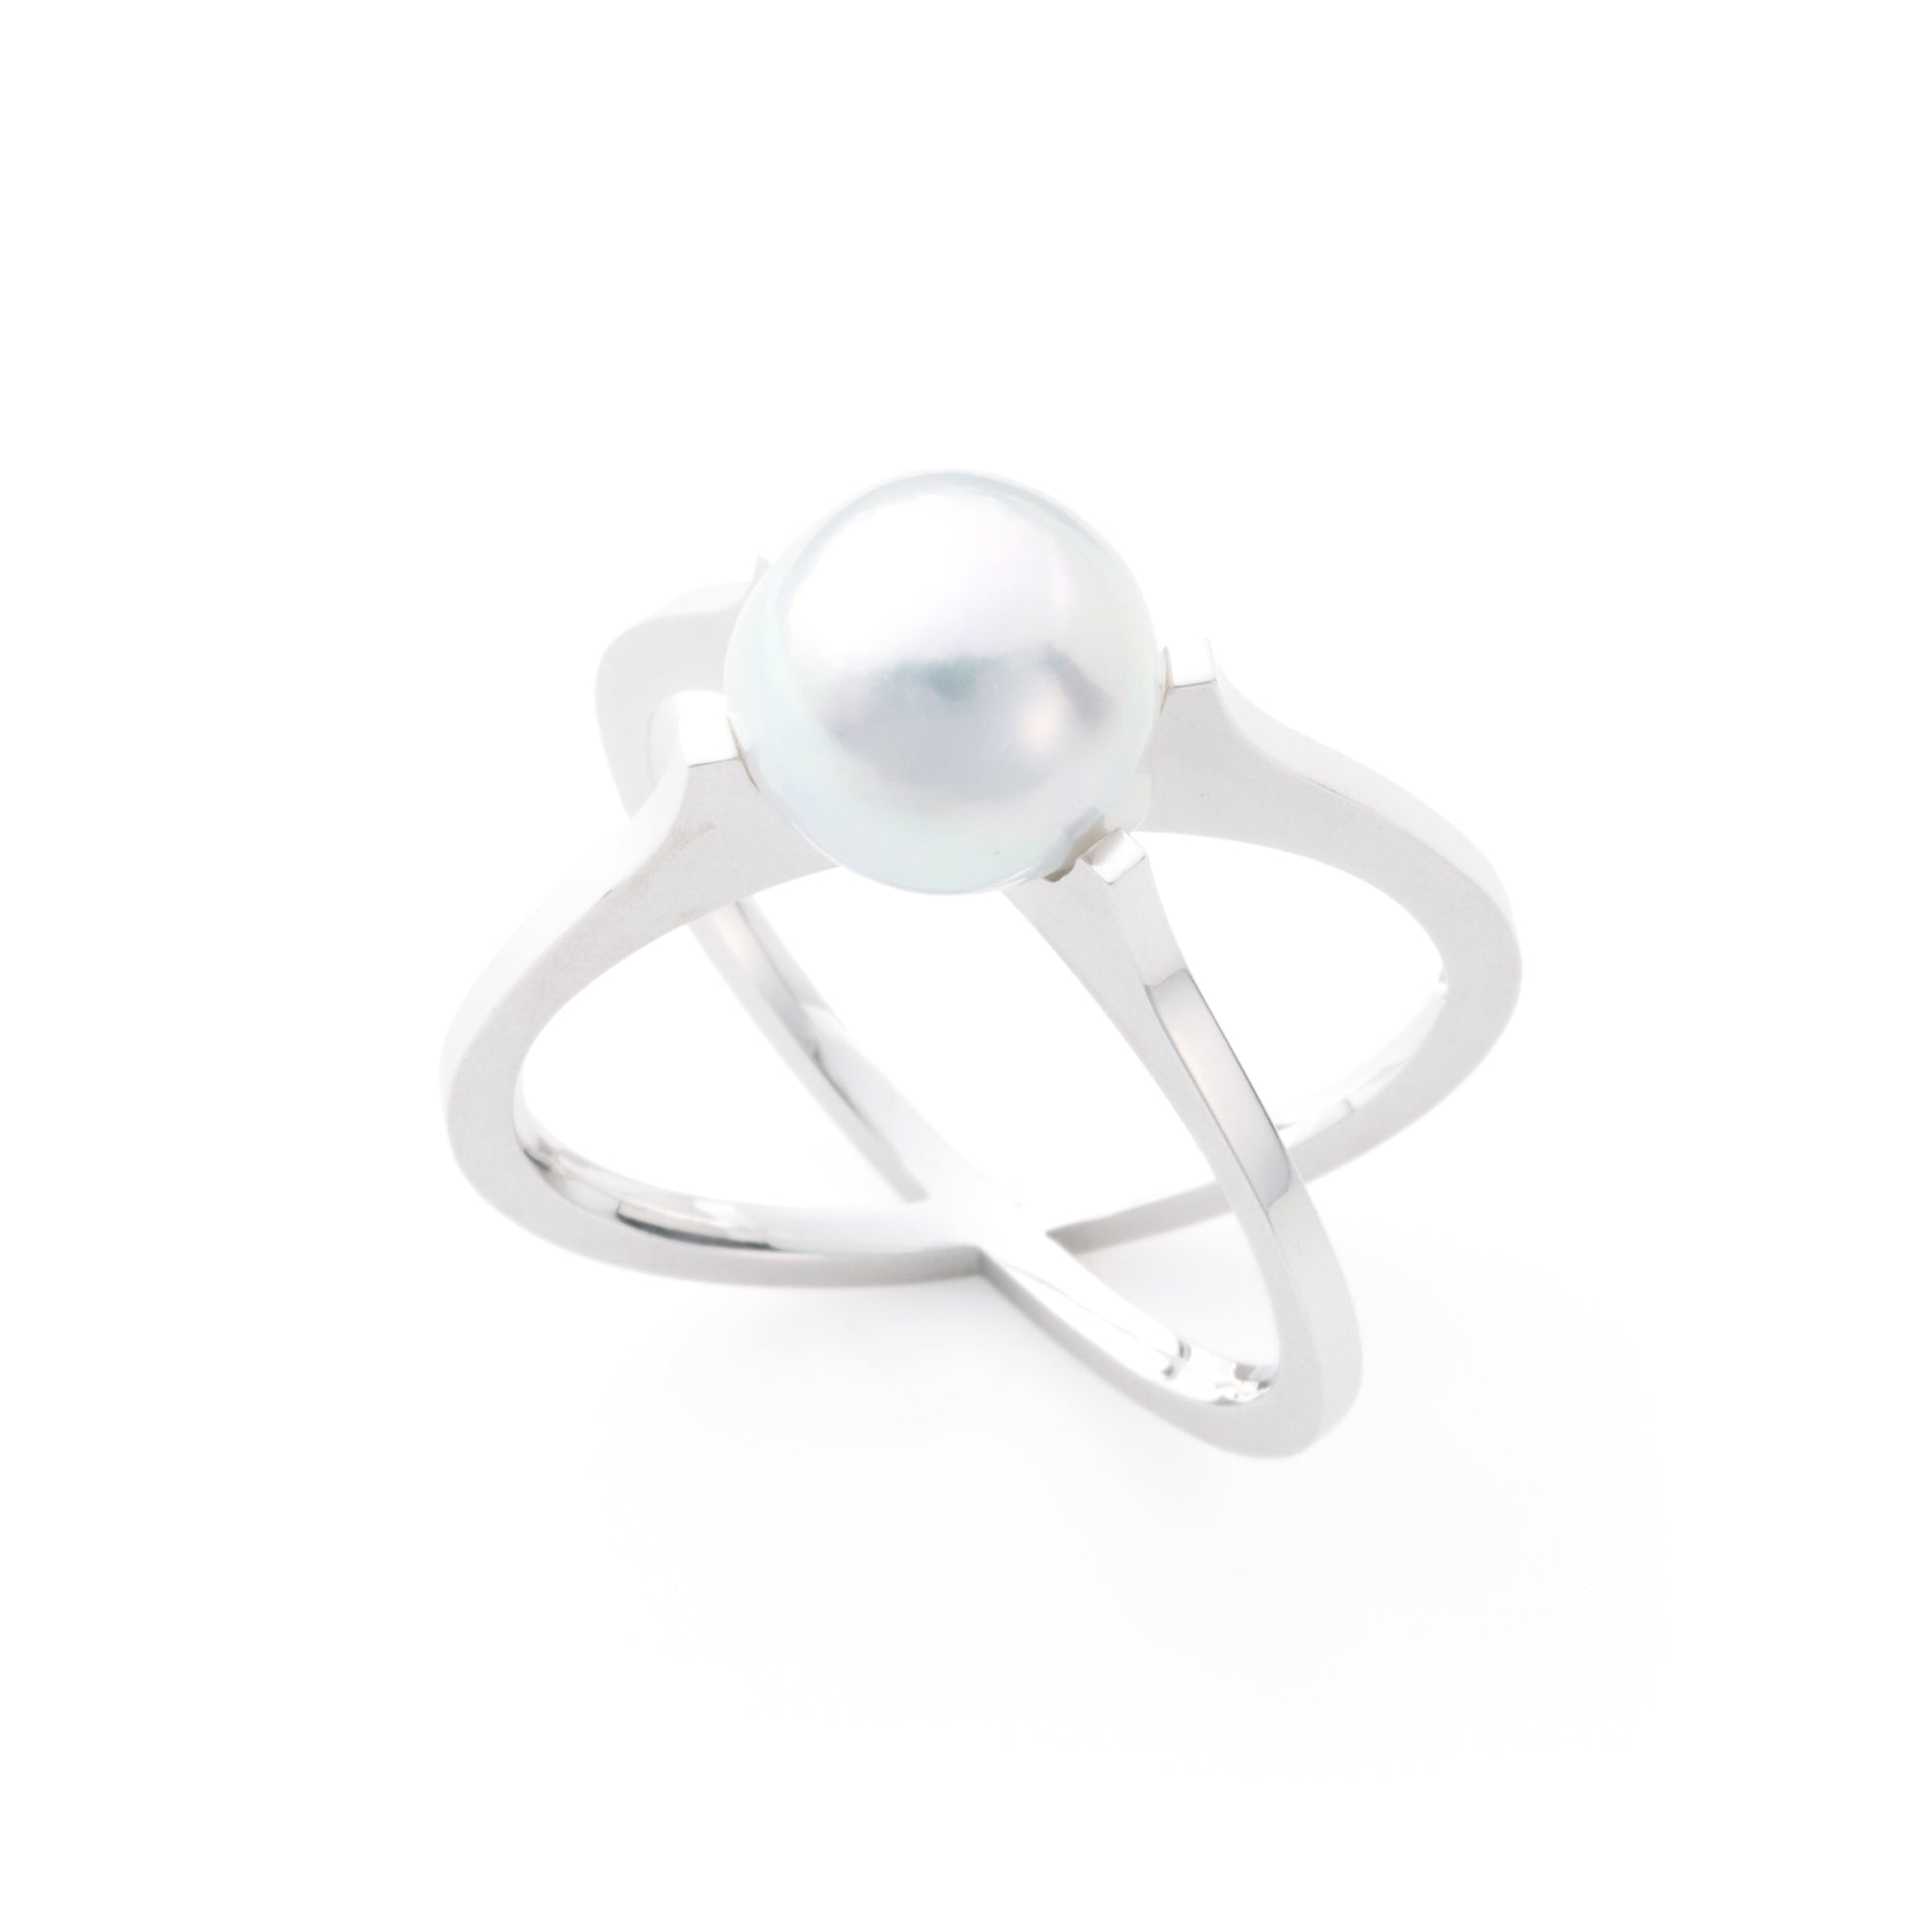 Silver925 シルバーリング Kosa Cross(こうさクロス)。あこや真珠のパールを使ったミニマルなモダンデザインのリングです。